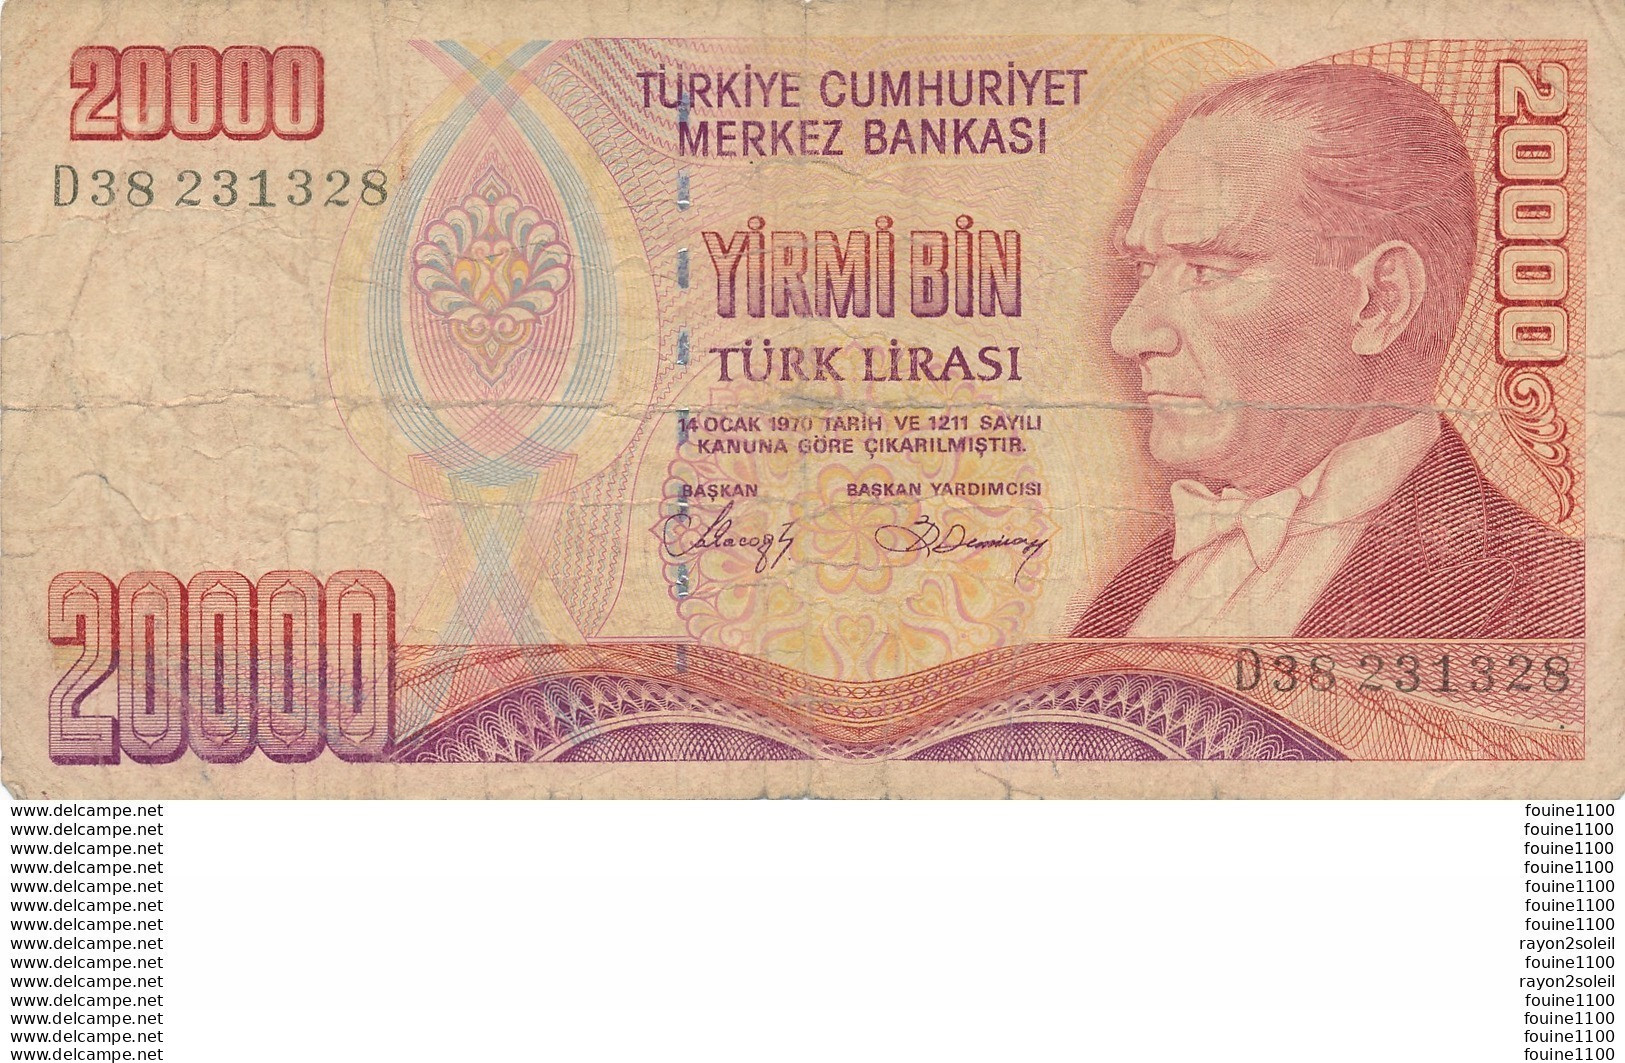 Billet  De Banque  Turquie Türkiye  20000 Turk Lirasi ( Mauvais état ) - Turquie